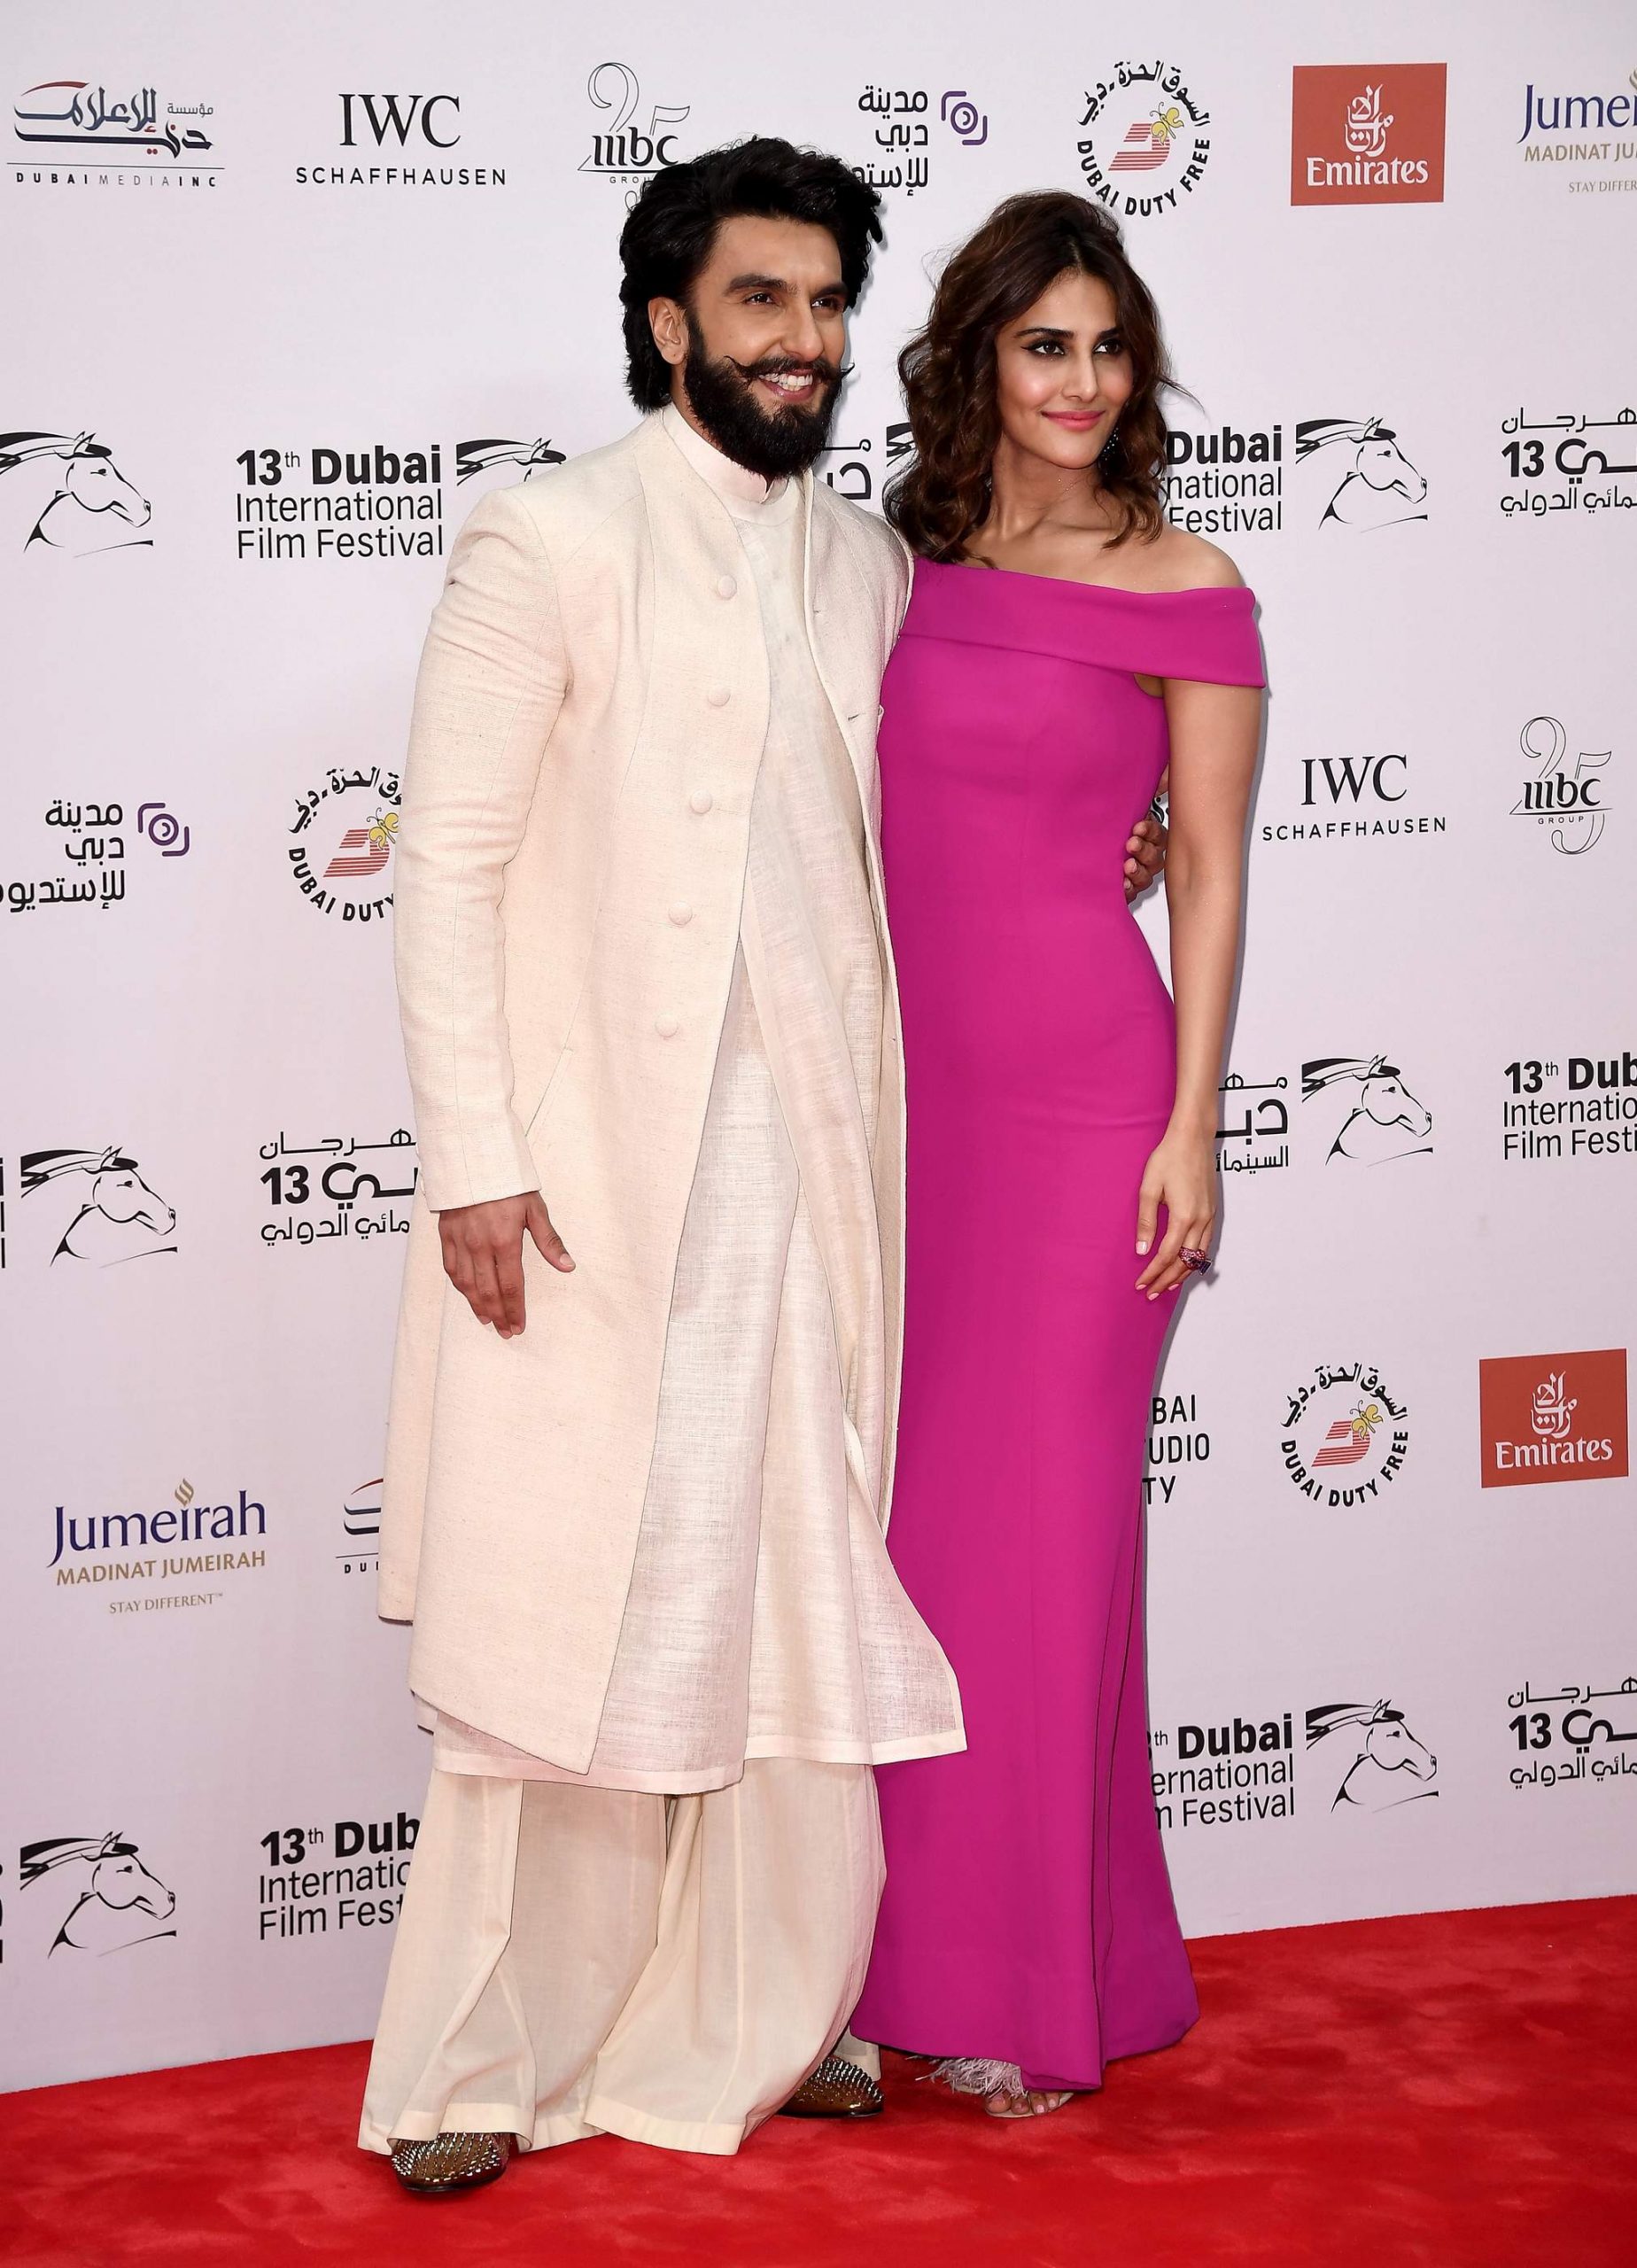 Ranveer Singh's red carpet appearance for Befikre's Dubai premiere